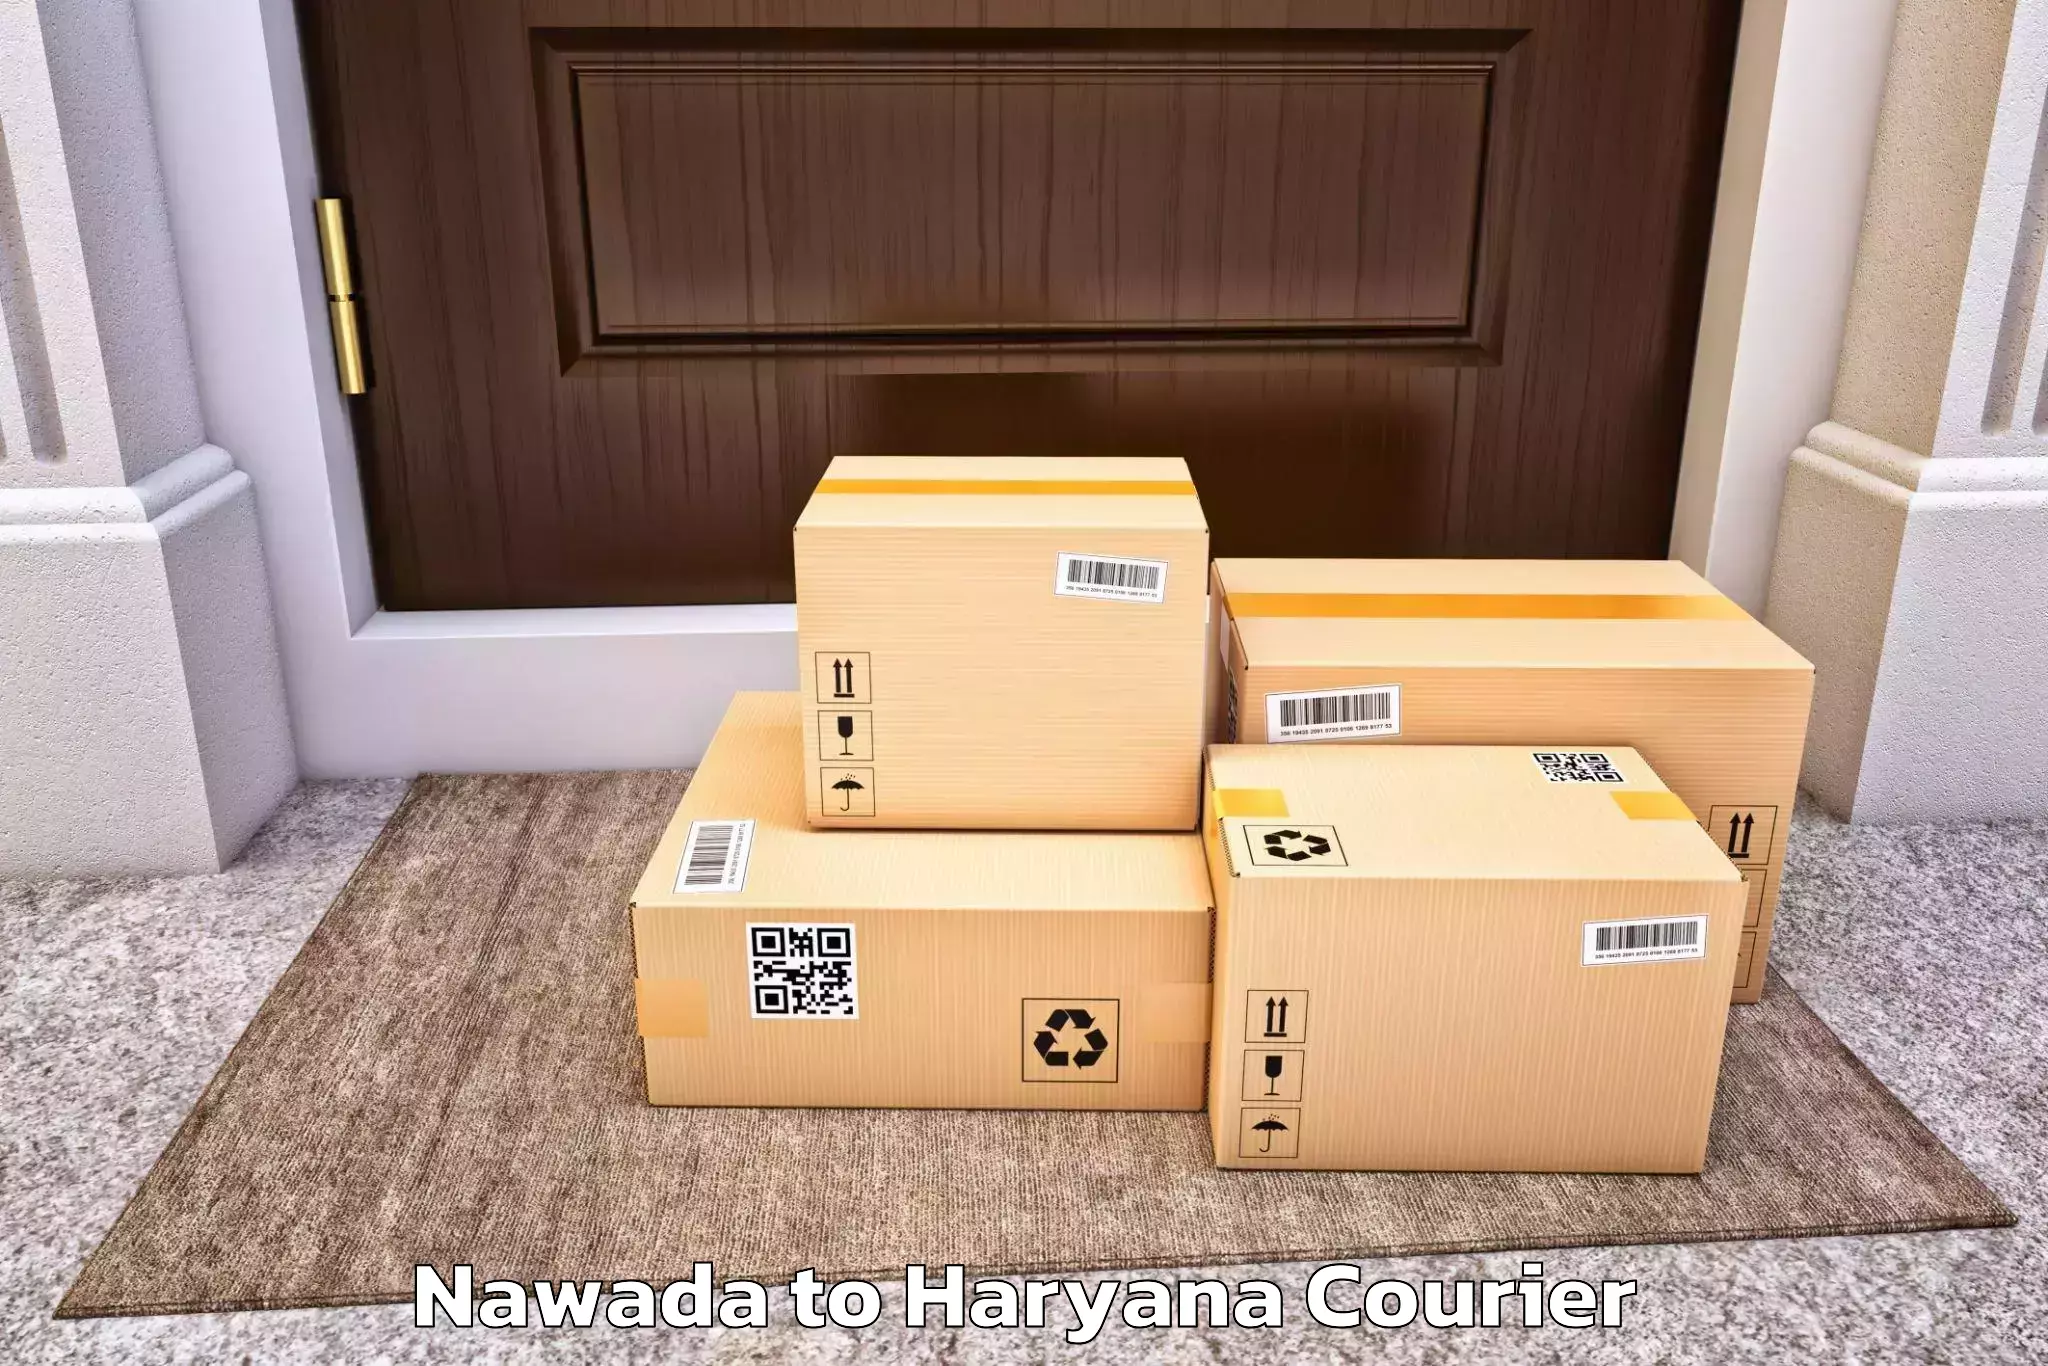 Specialized moving company Nawada to Haryana